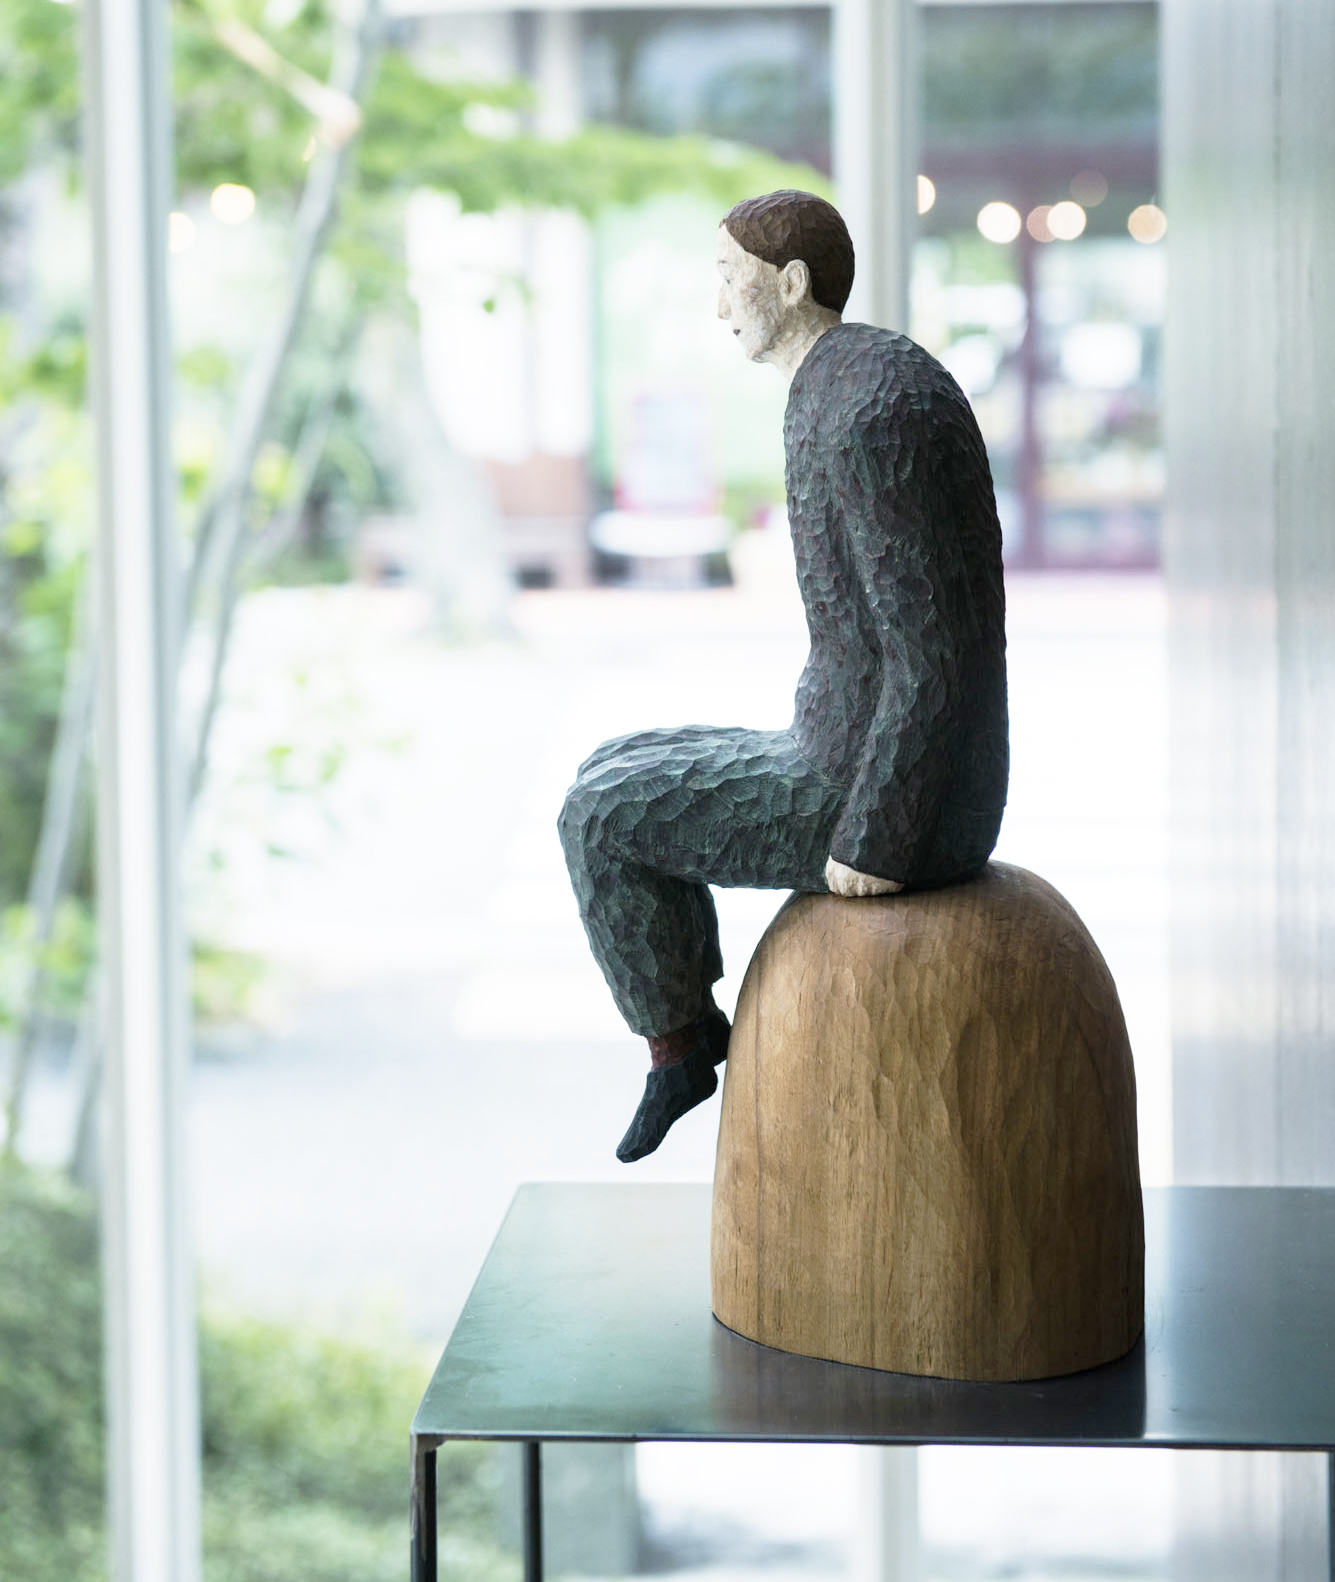 ホテルのエントランスで迎えてくれる穏やかな木彫人物像は、アーティスト丸尾康弘の作品。